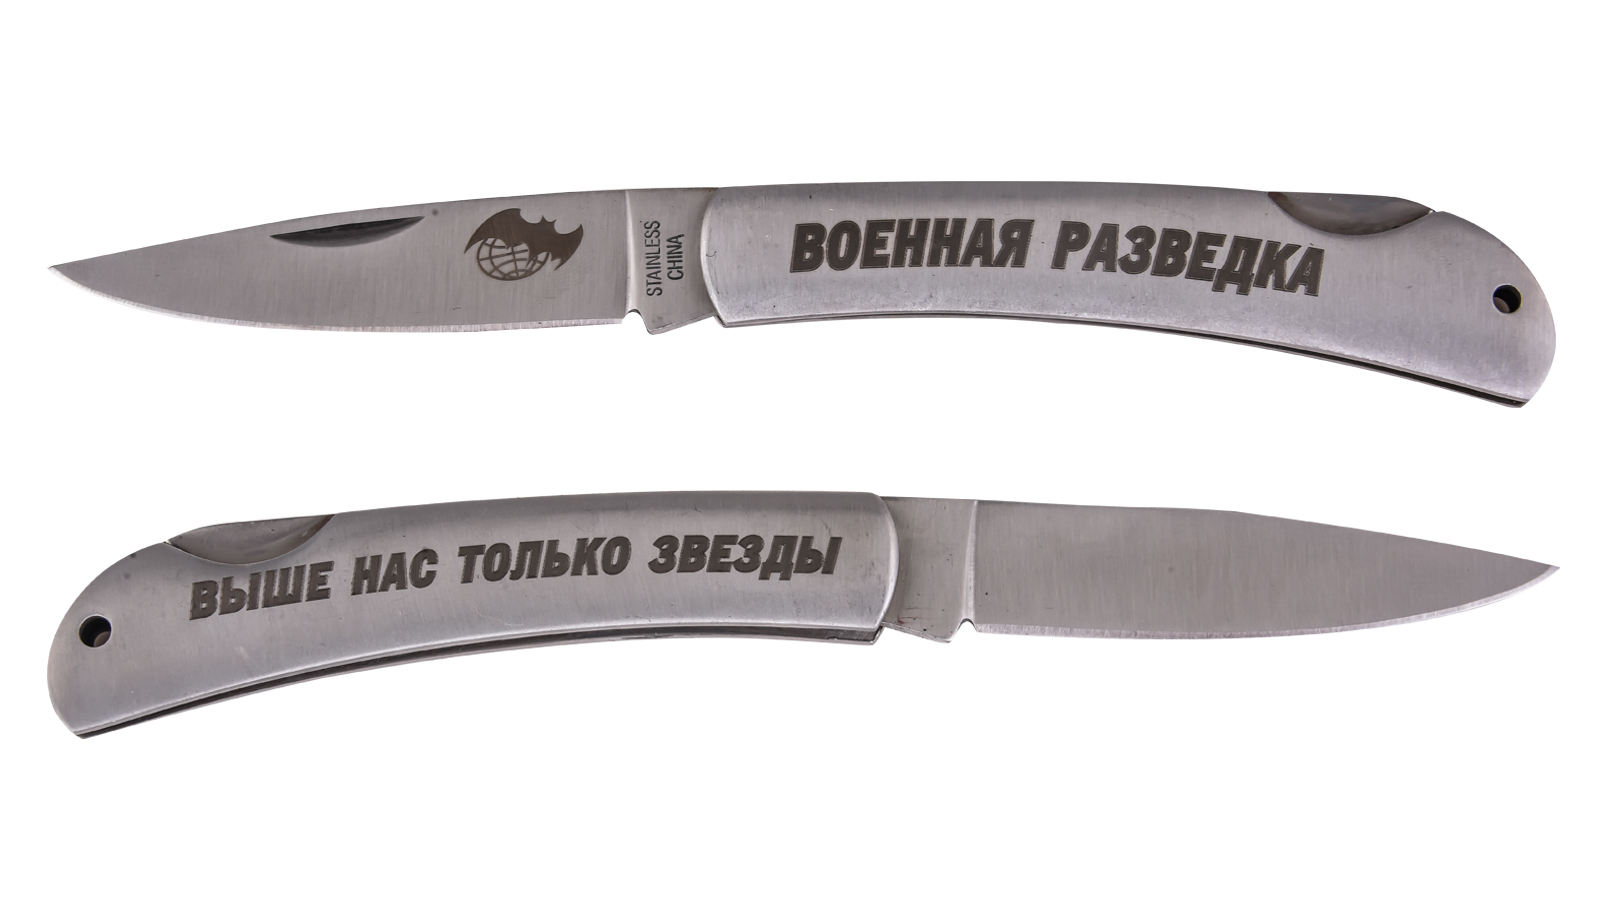 Купить лучший складной нож с символикой Военной разведки в Военпро